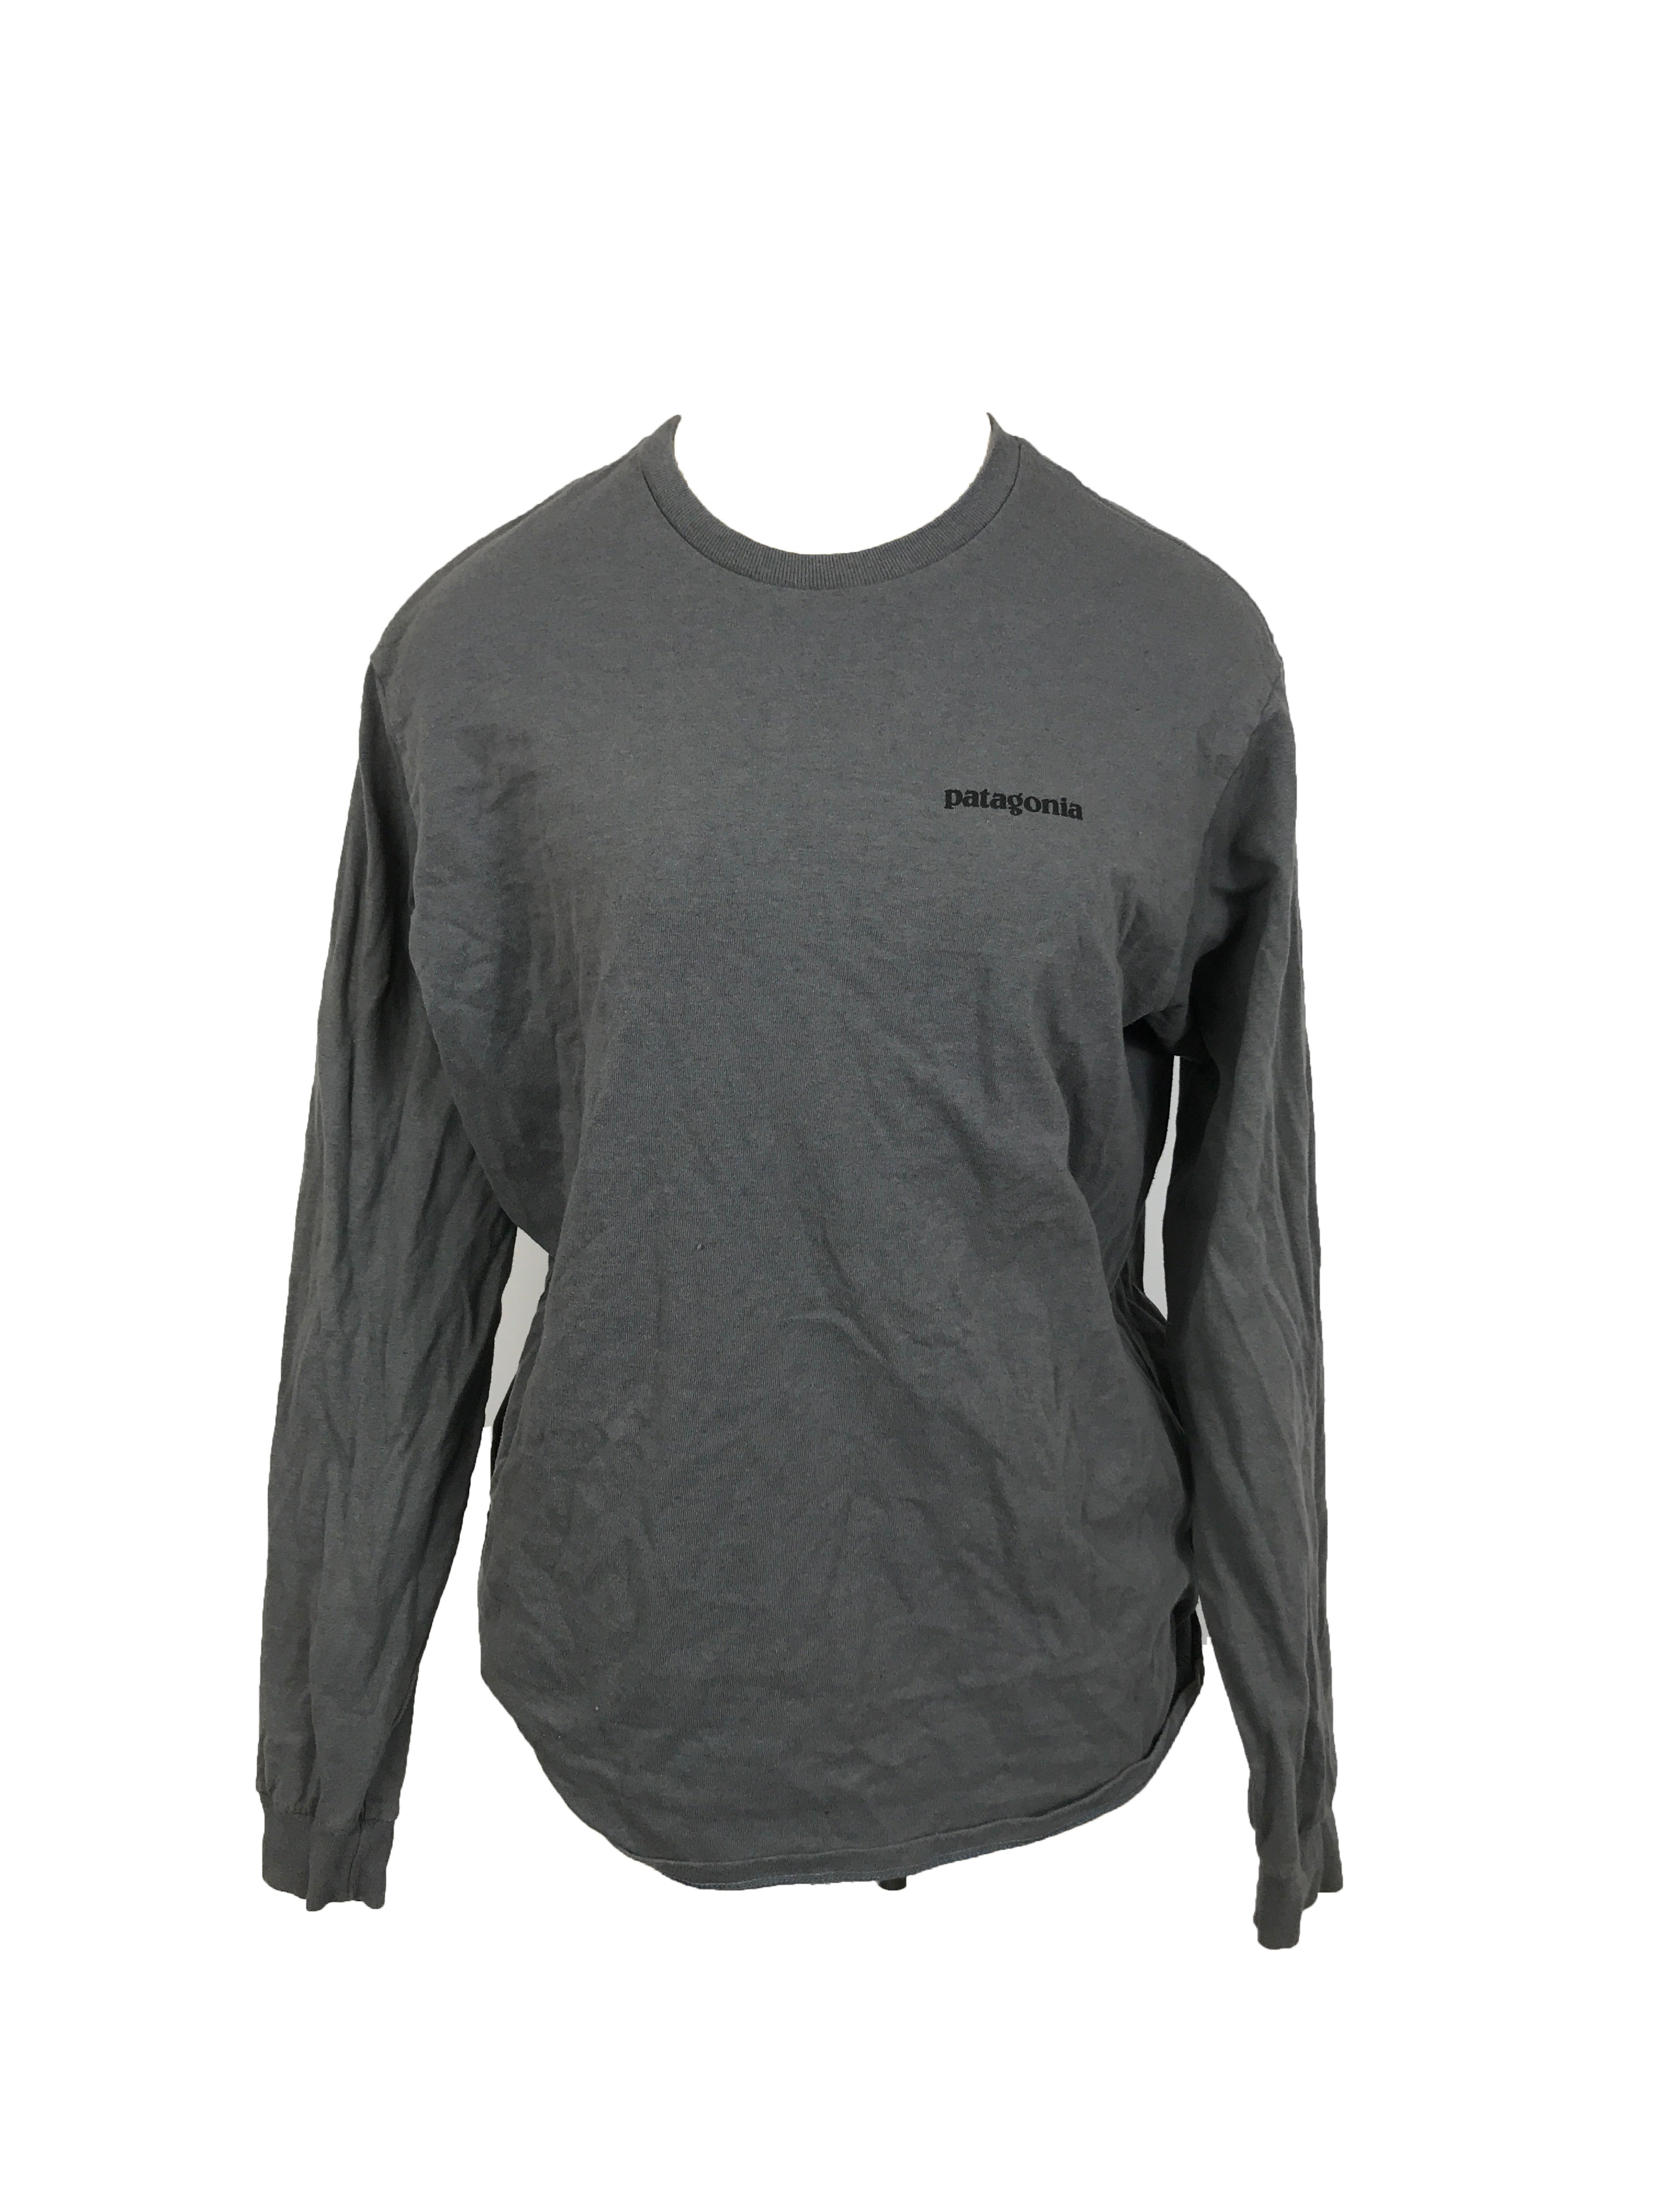 Patagonia Dark Grey Long Sleeve Shirt Men's Size M